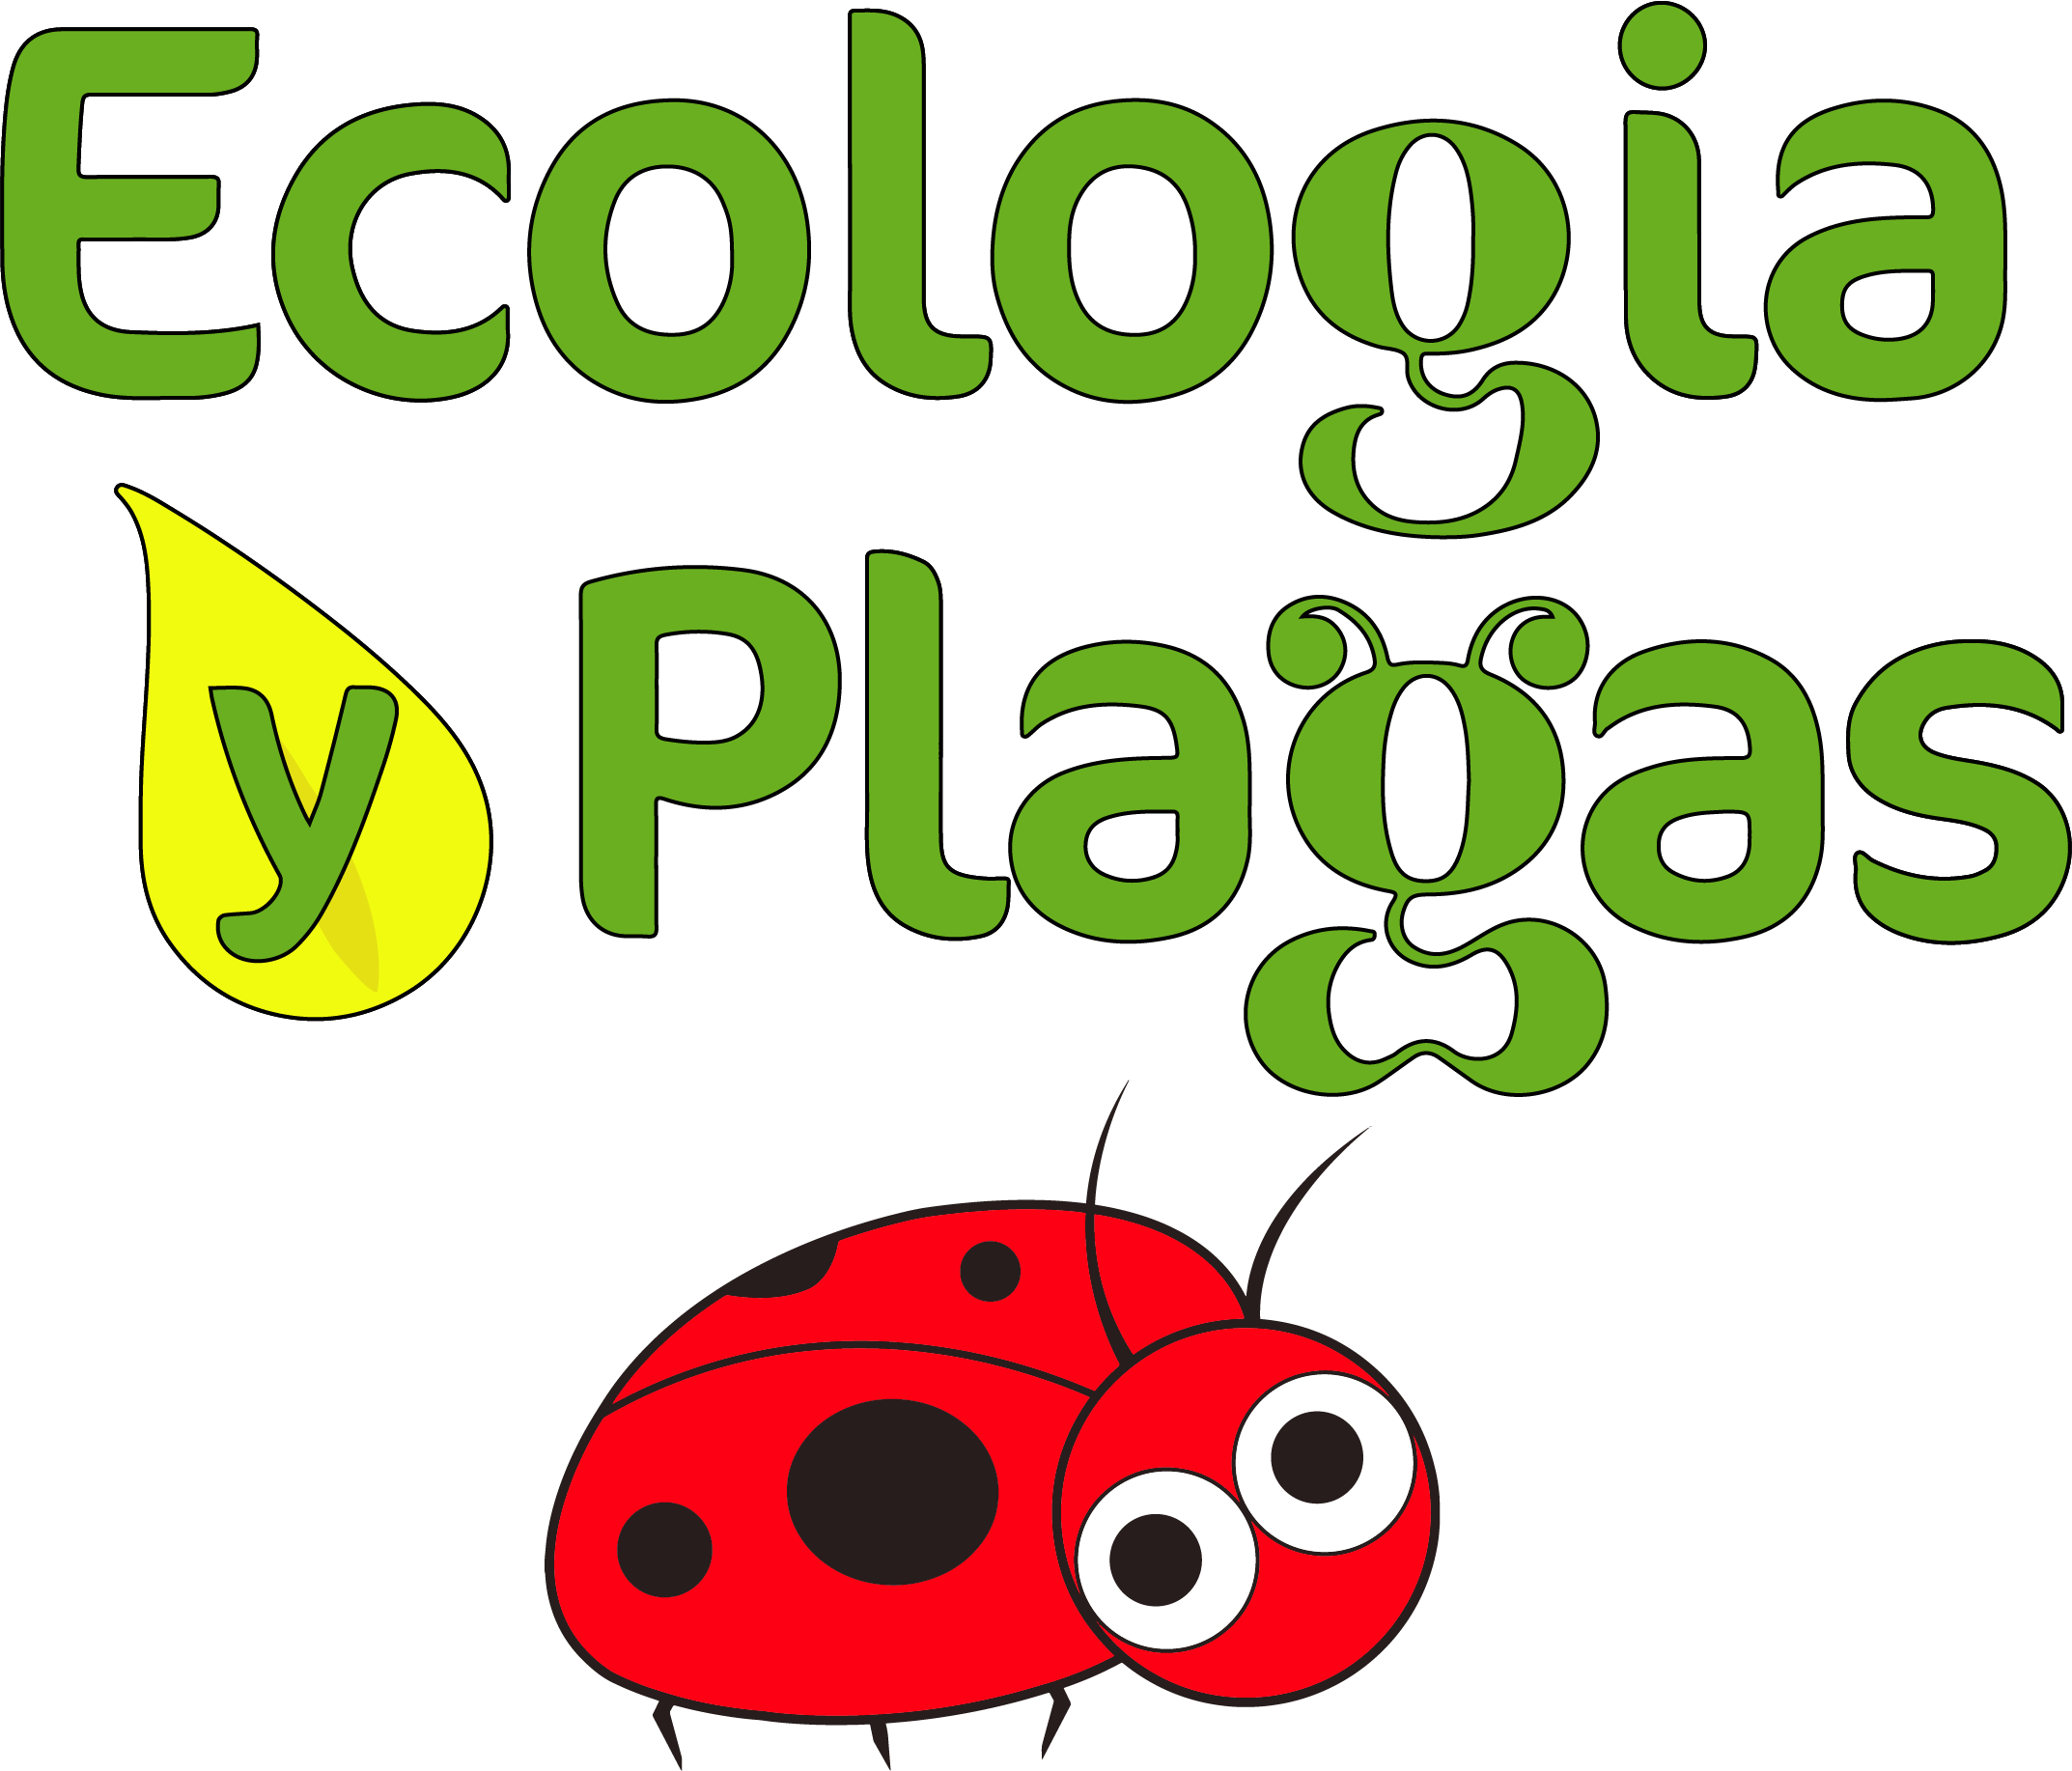 Ecología y plagas